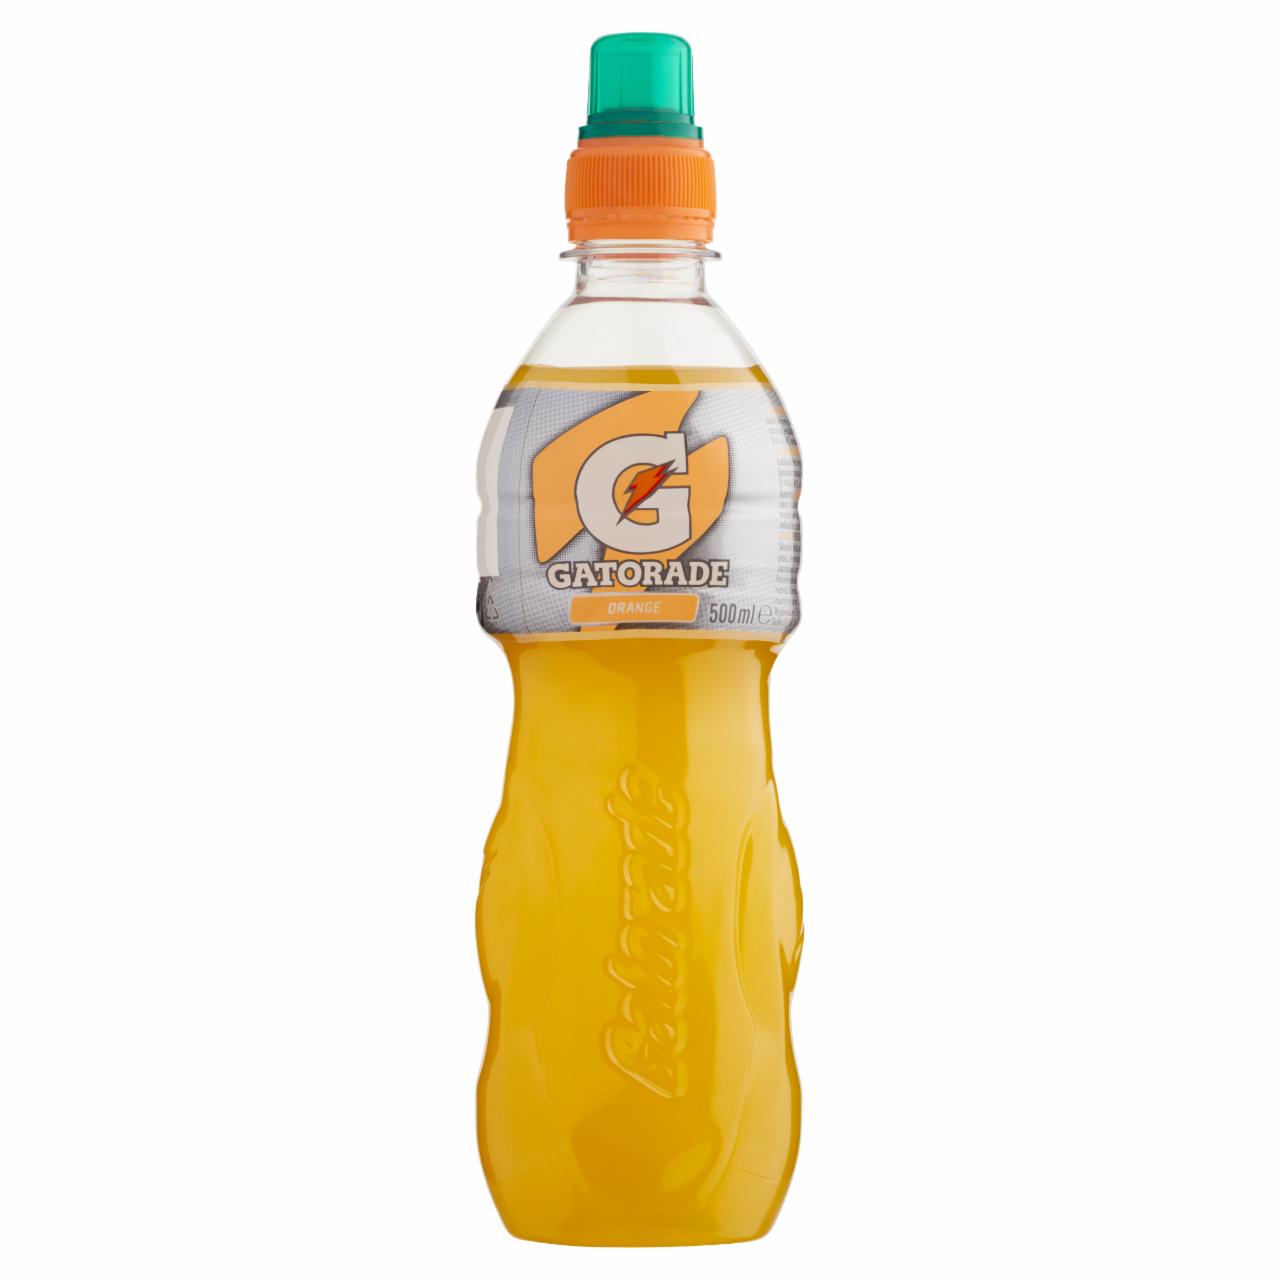 Képek - Gatorade szénsavmentes narancsízű izotóniás sportital cukorral és édesítőszerekkel 500 ml